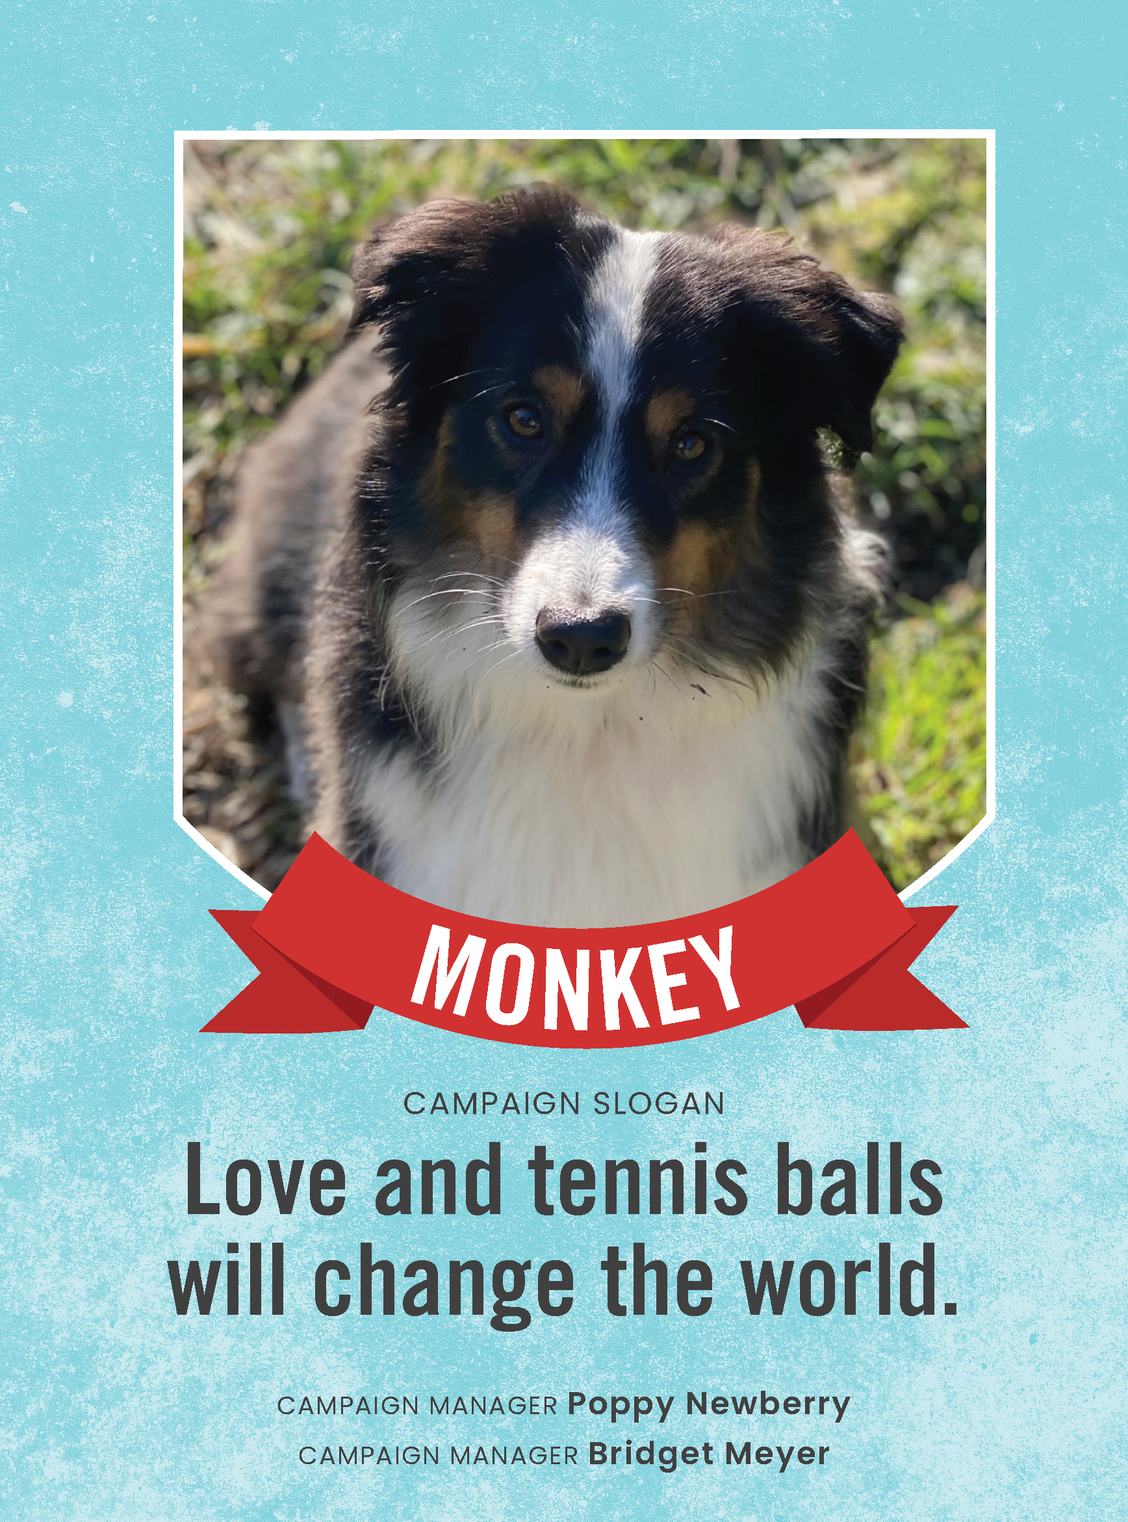 Vote for Monkey!